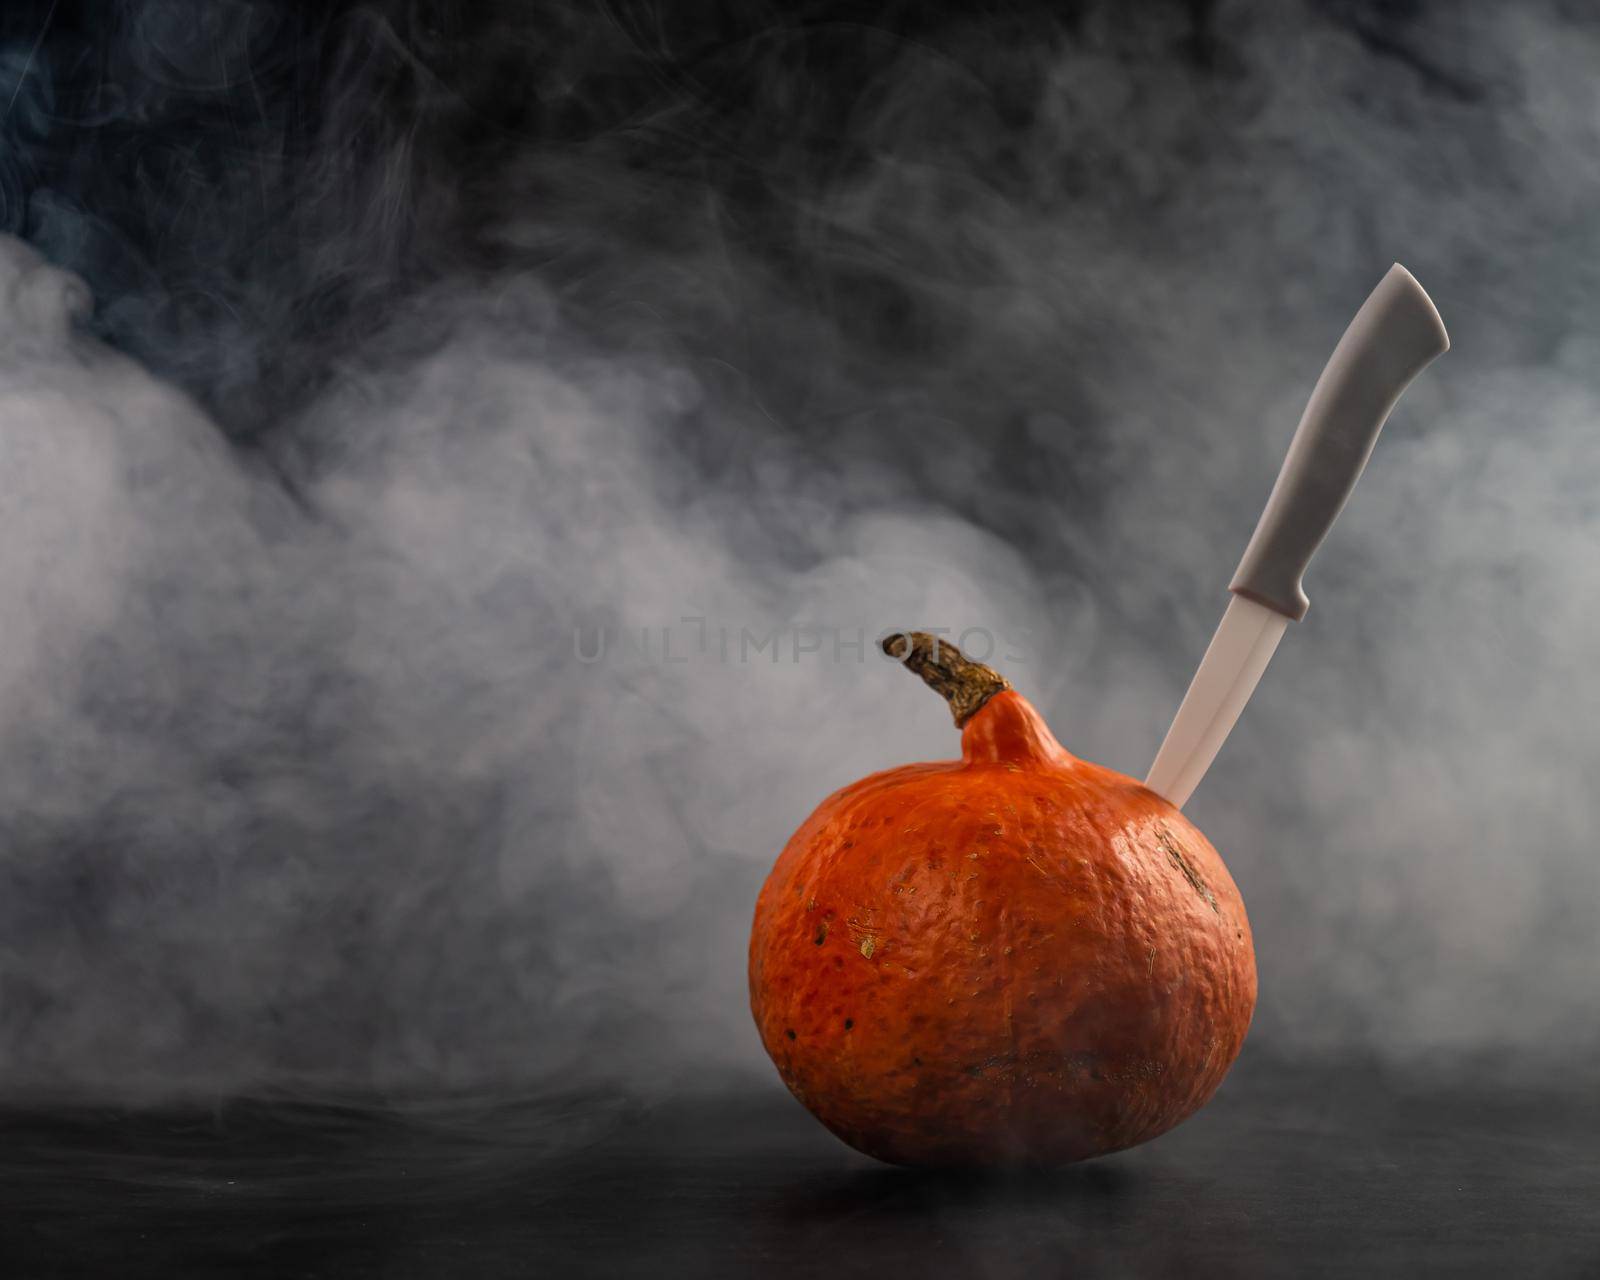 A knife in a pumpkin in the smoke. Happy Halloween